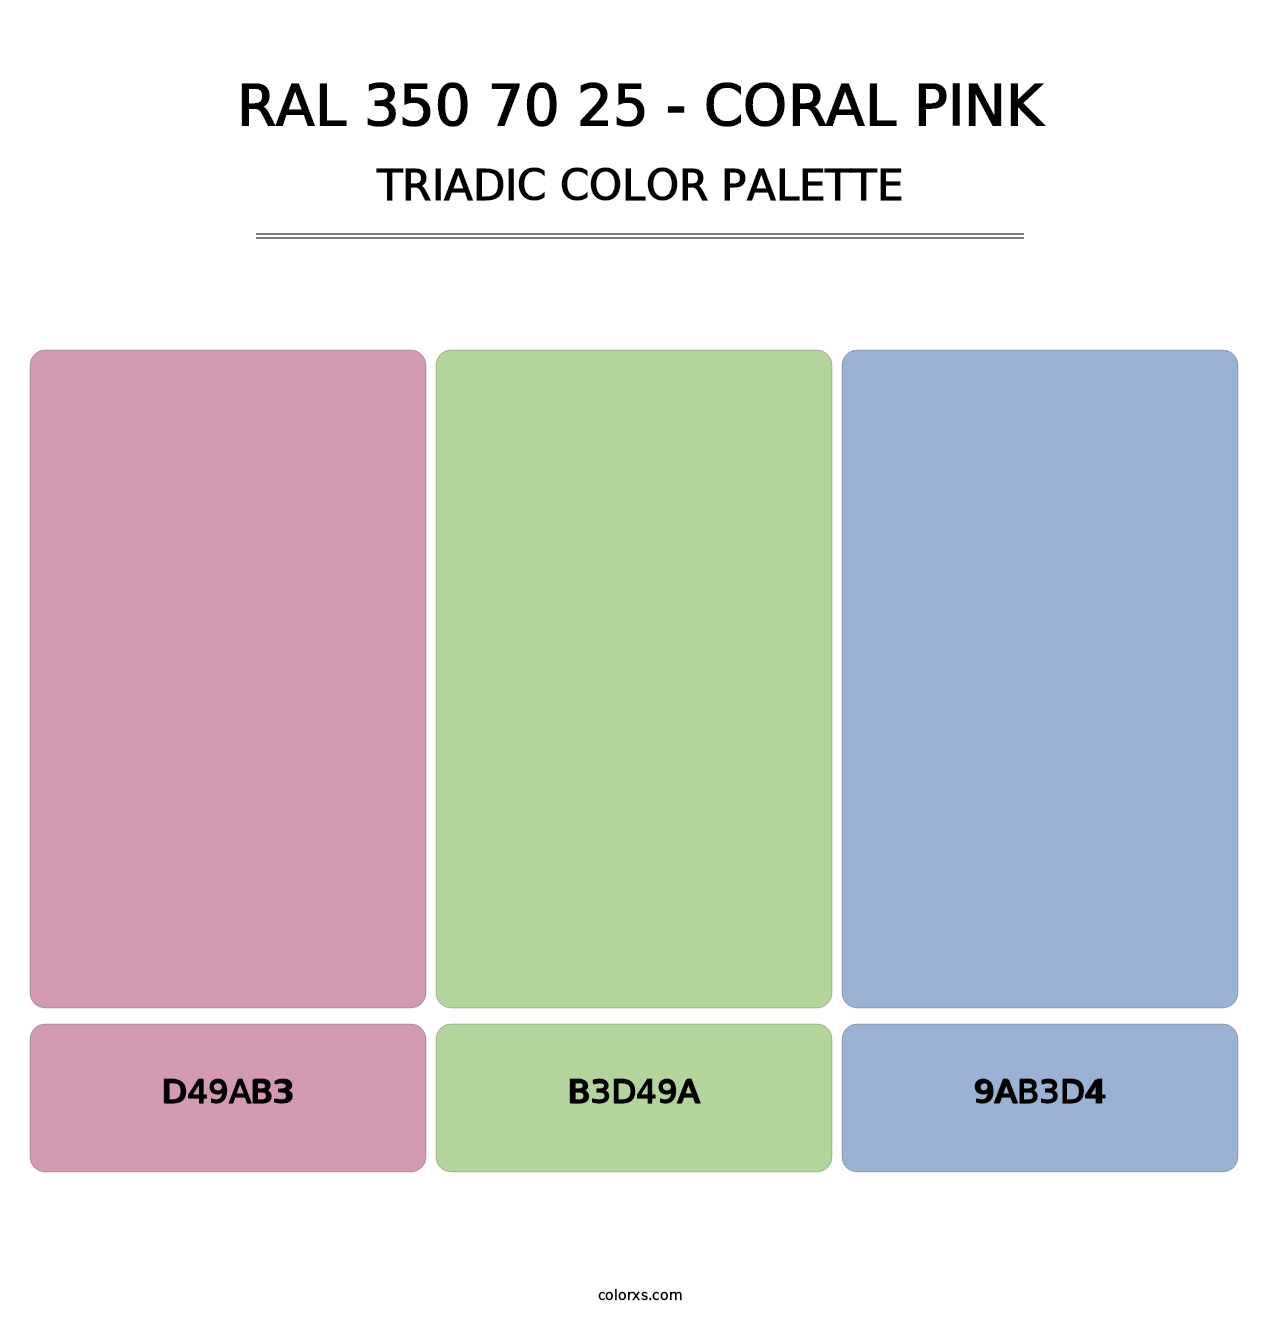 RAL 350 70 25 - Coral Pink - Triadic Color Palette